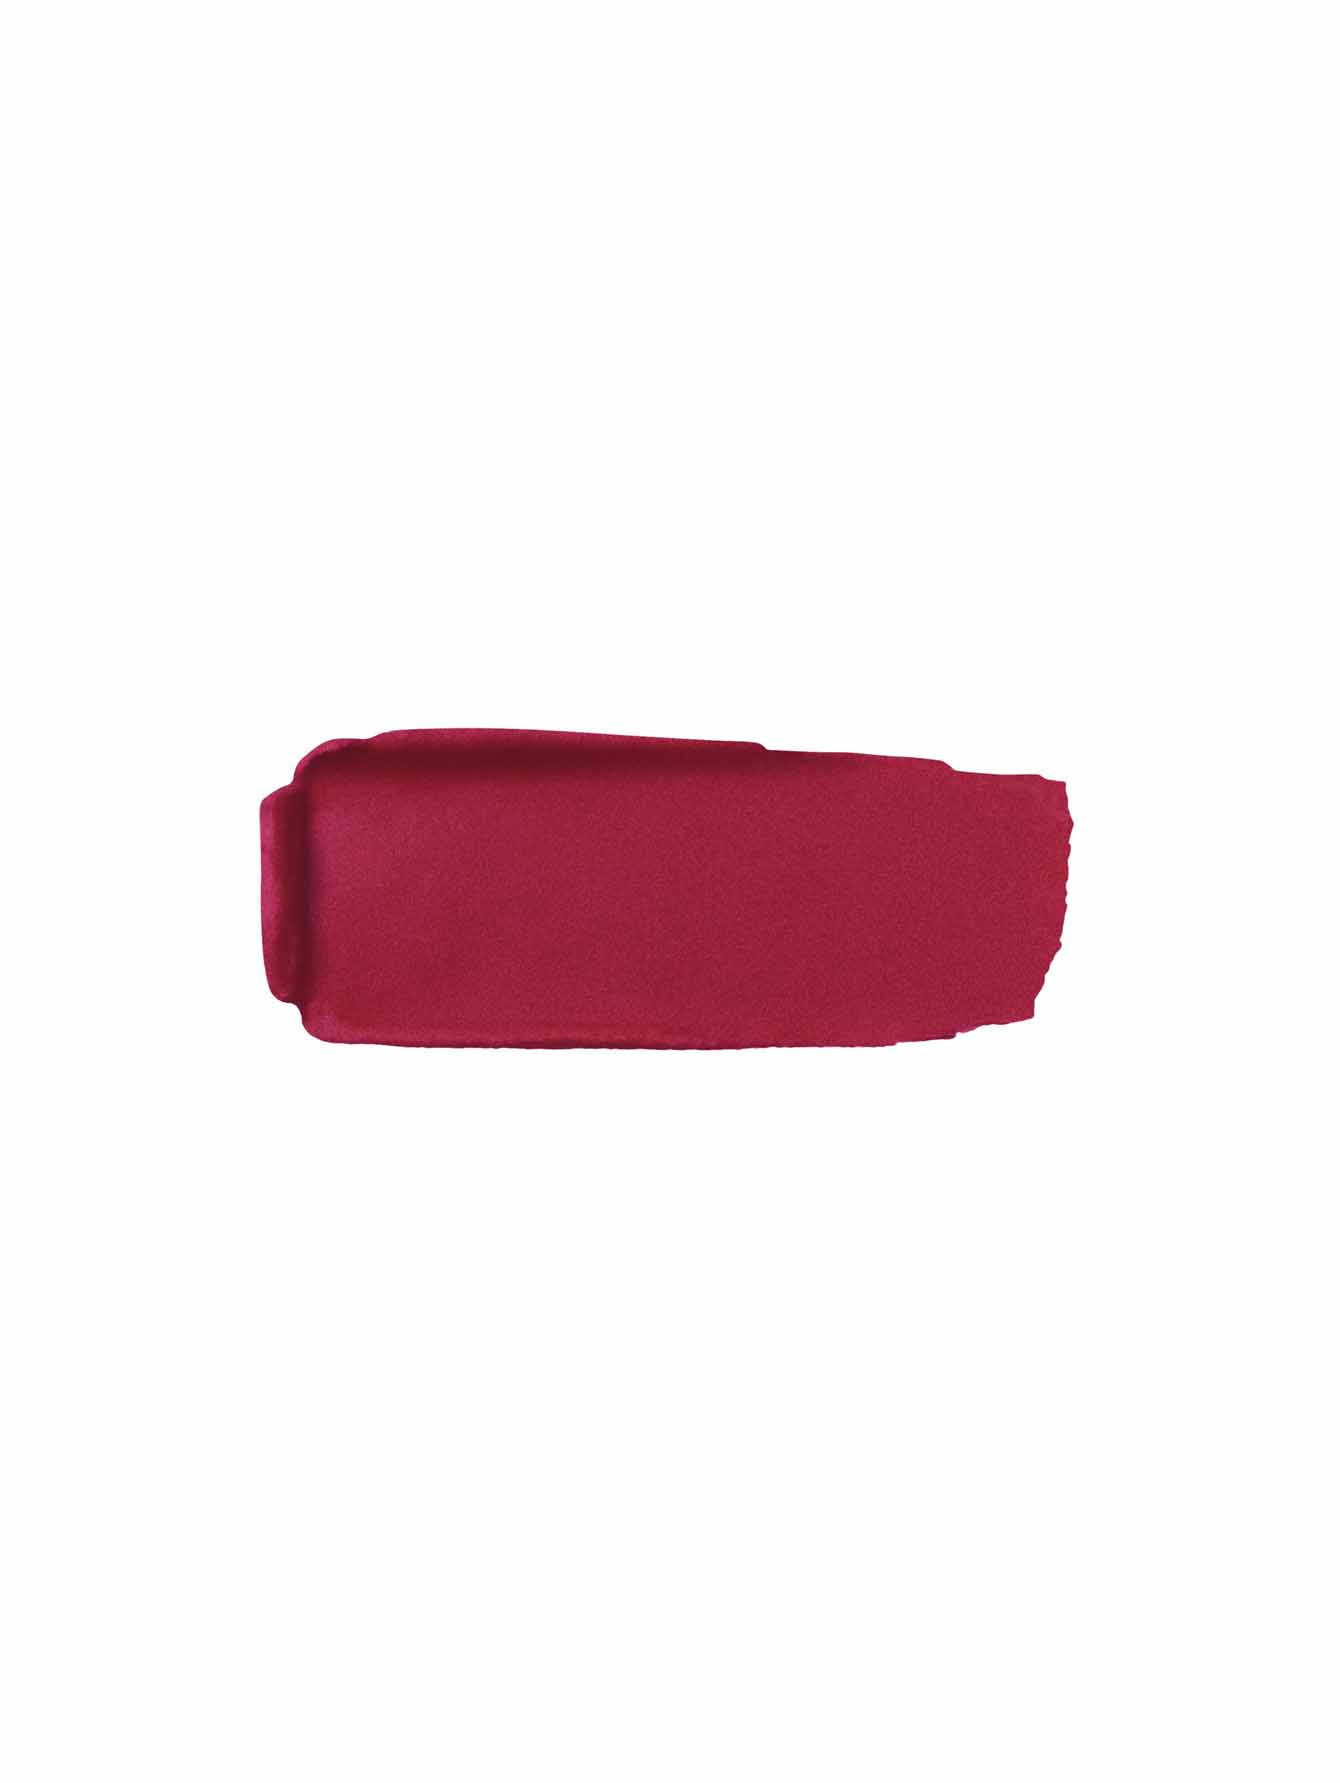 Матовая губная помада №525 Глубокий розовый Rouge G - Обтравка1